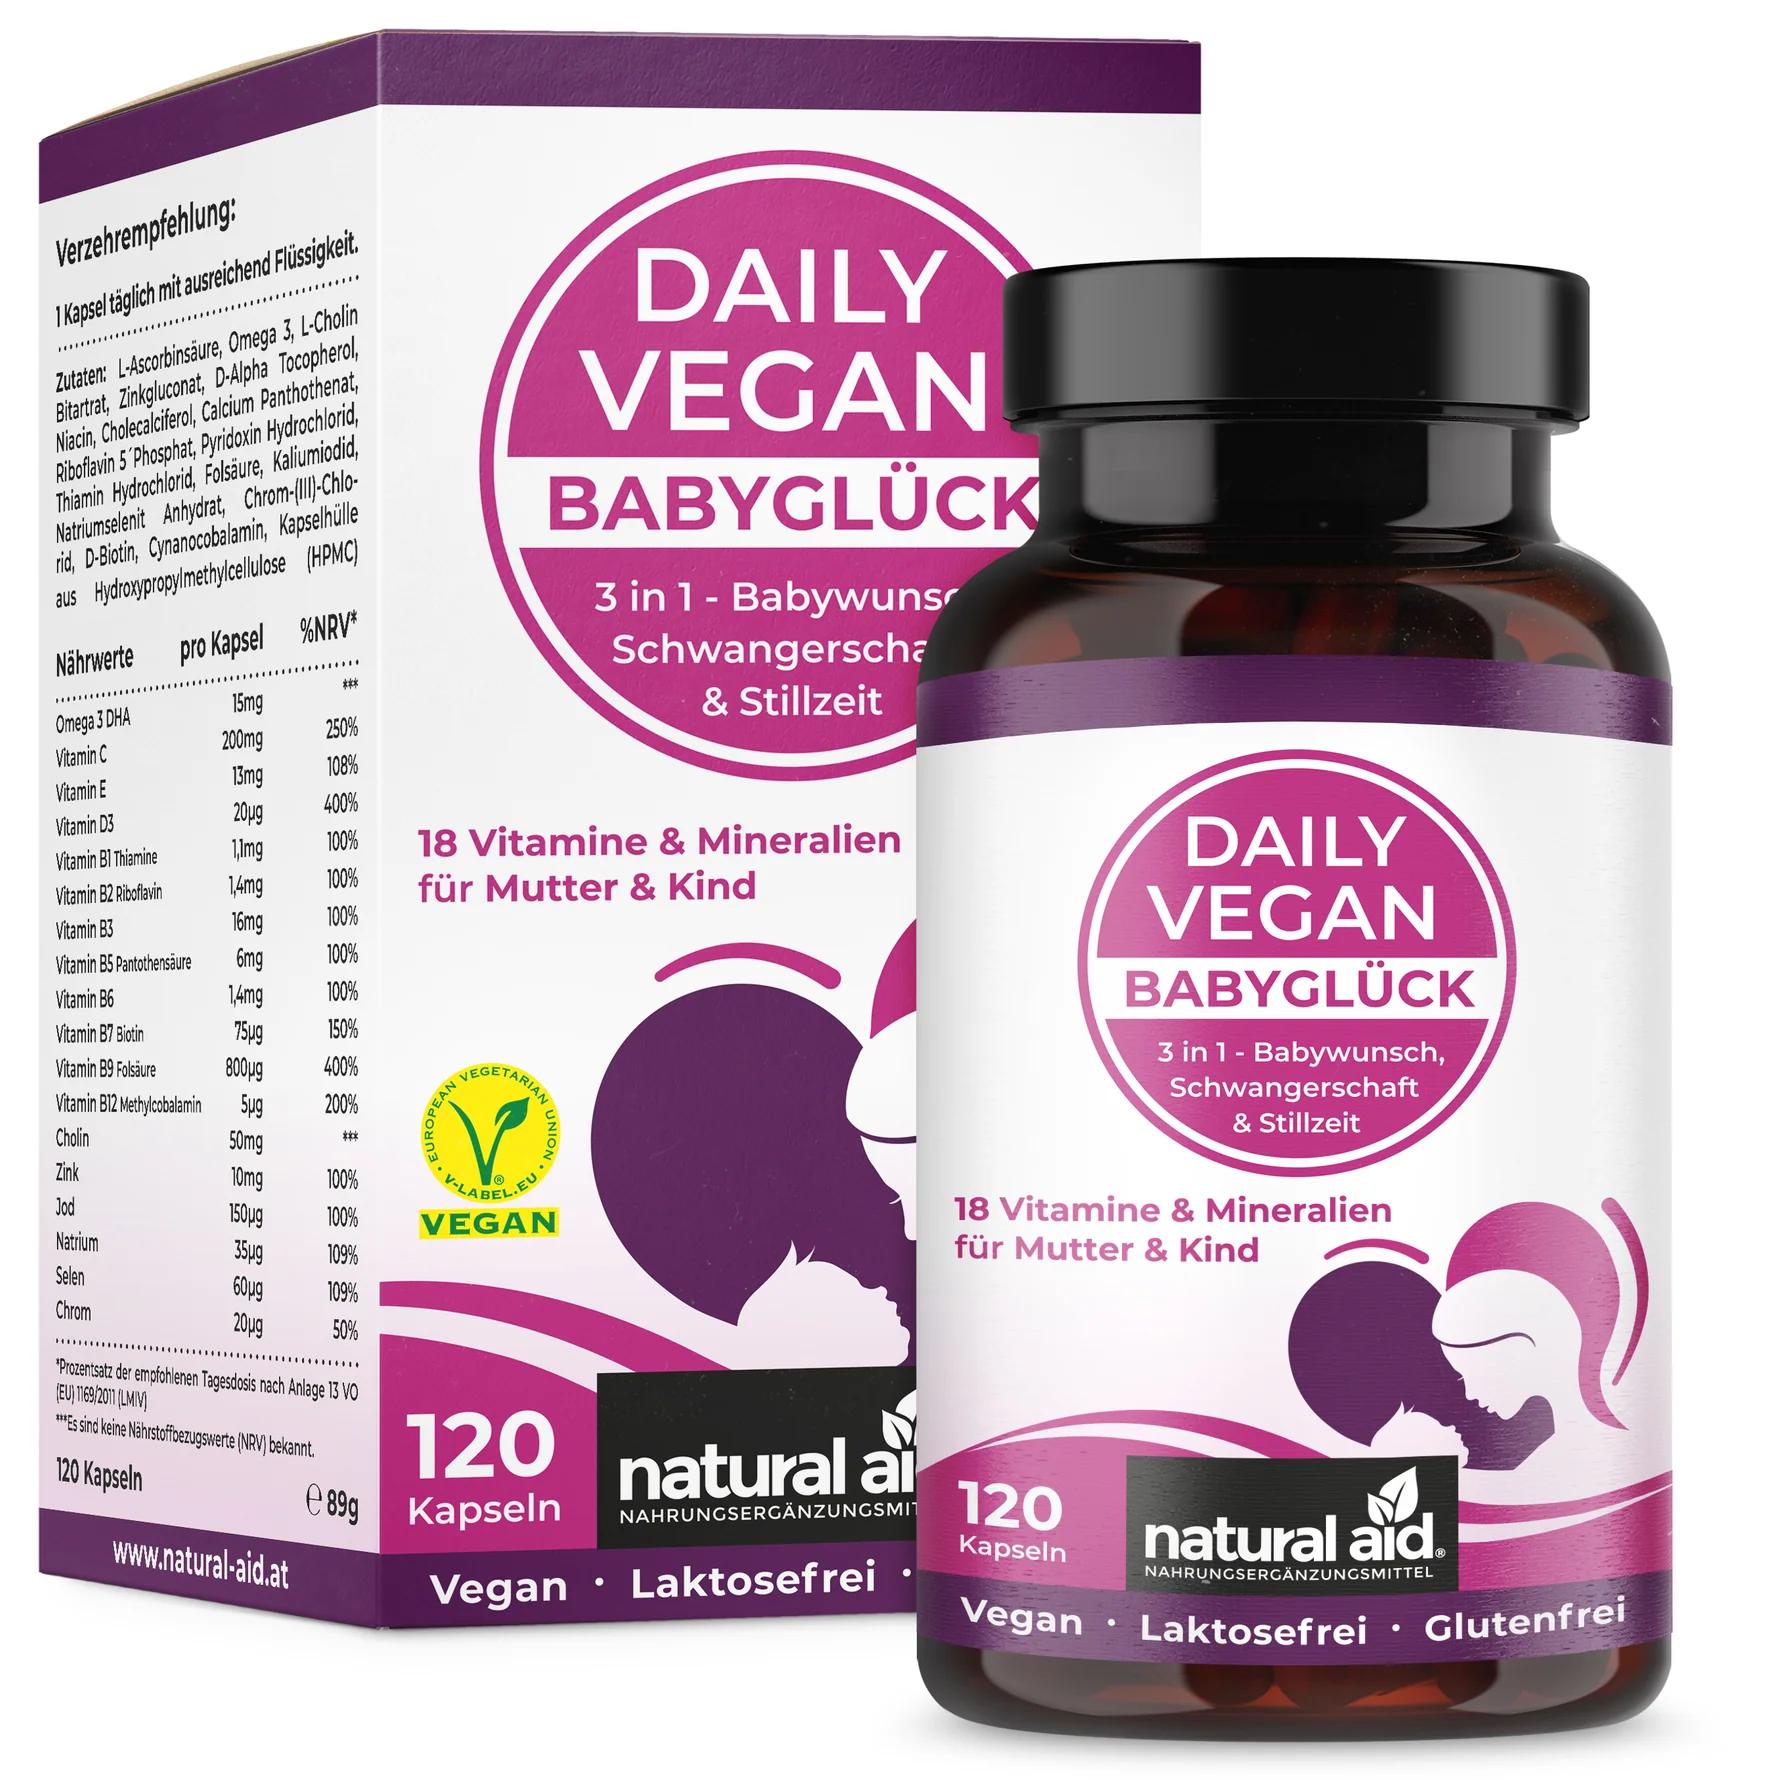 Natural Aid Daily Vegan Babyglück | 120 Kapseln - 18 Vitamine und Mineralien für Mutter und Kind